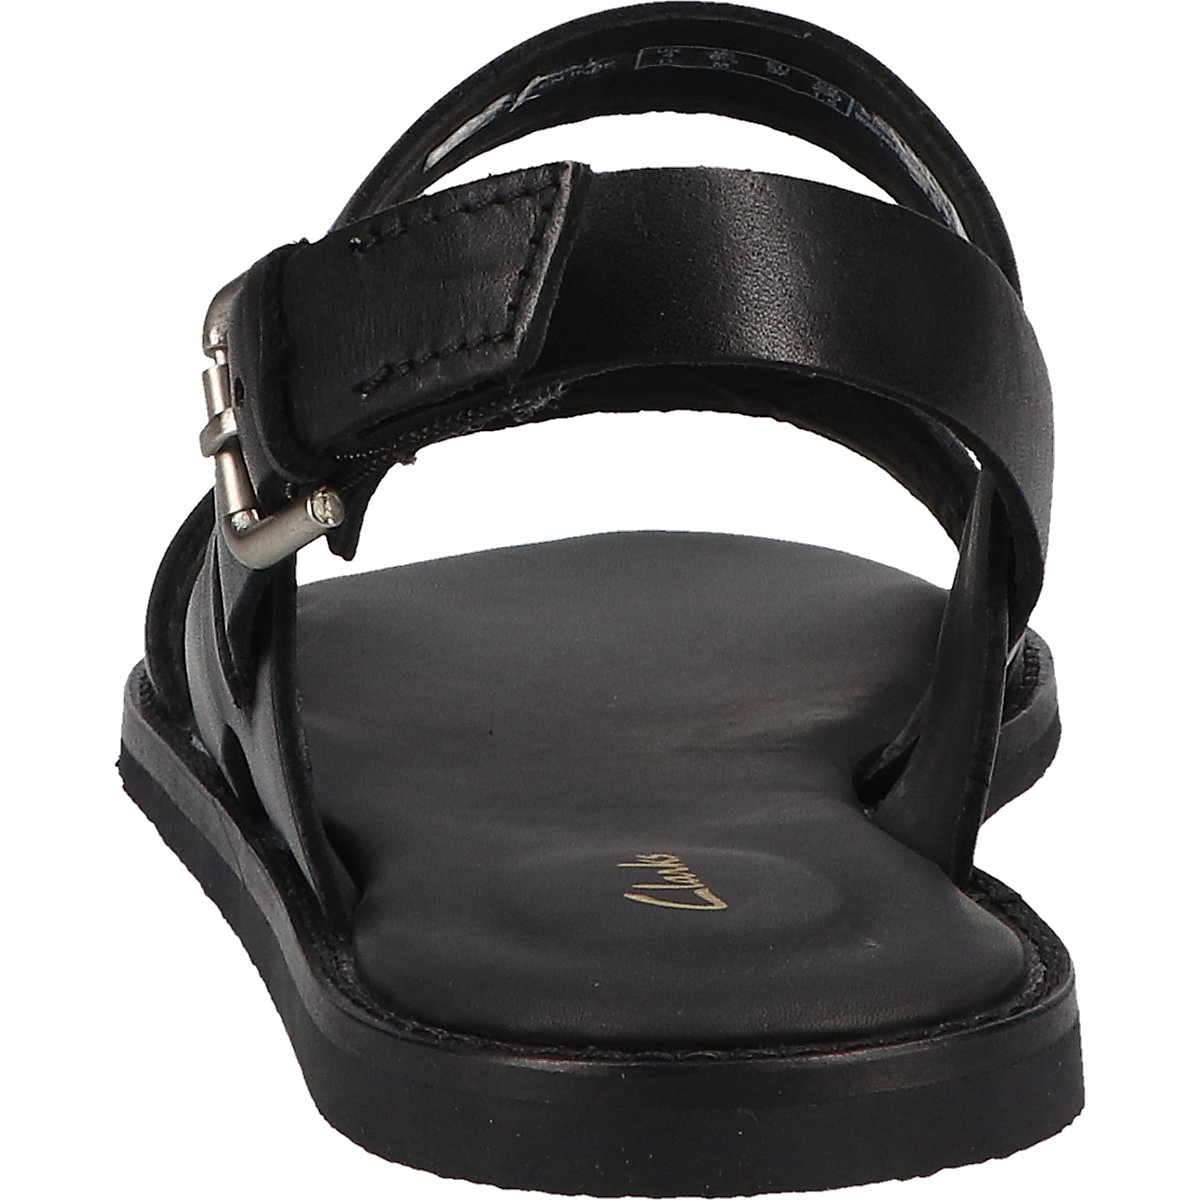 Clarks Karsea Strap Klassische Sandalen schwarz Modell 1